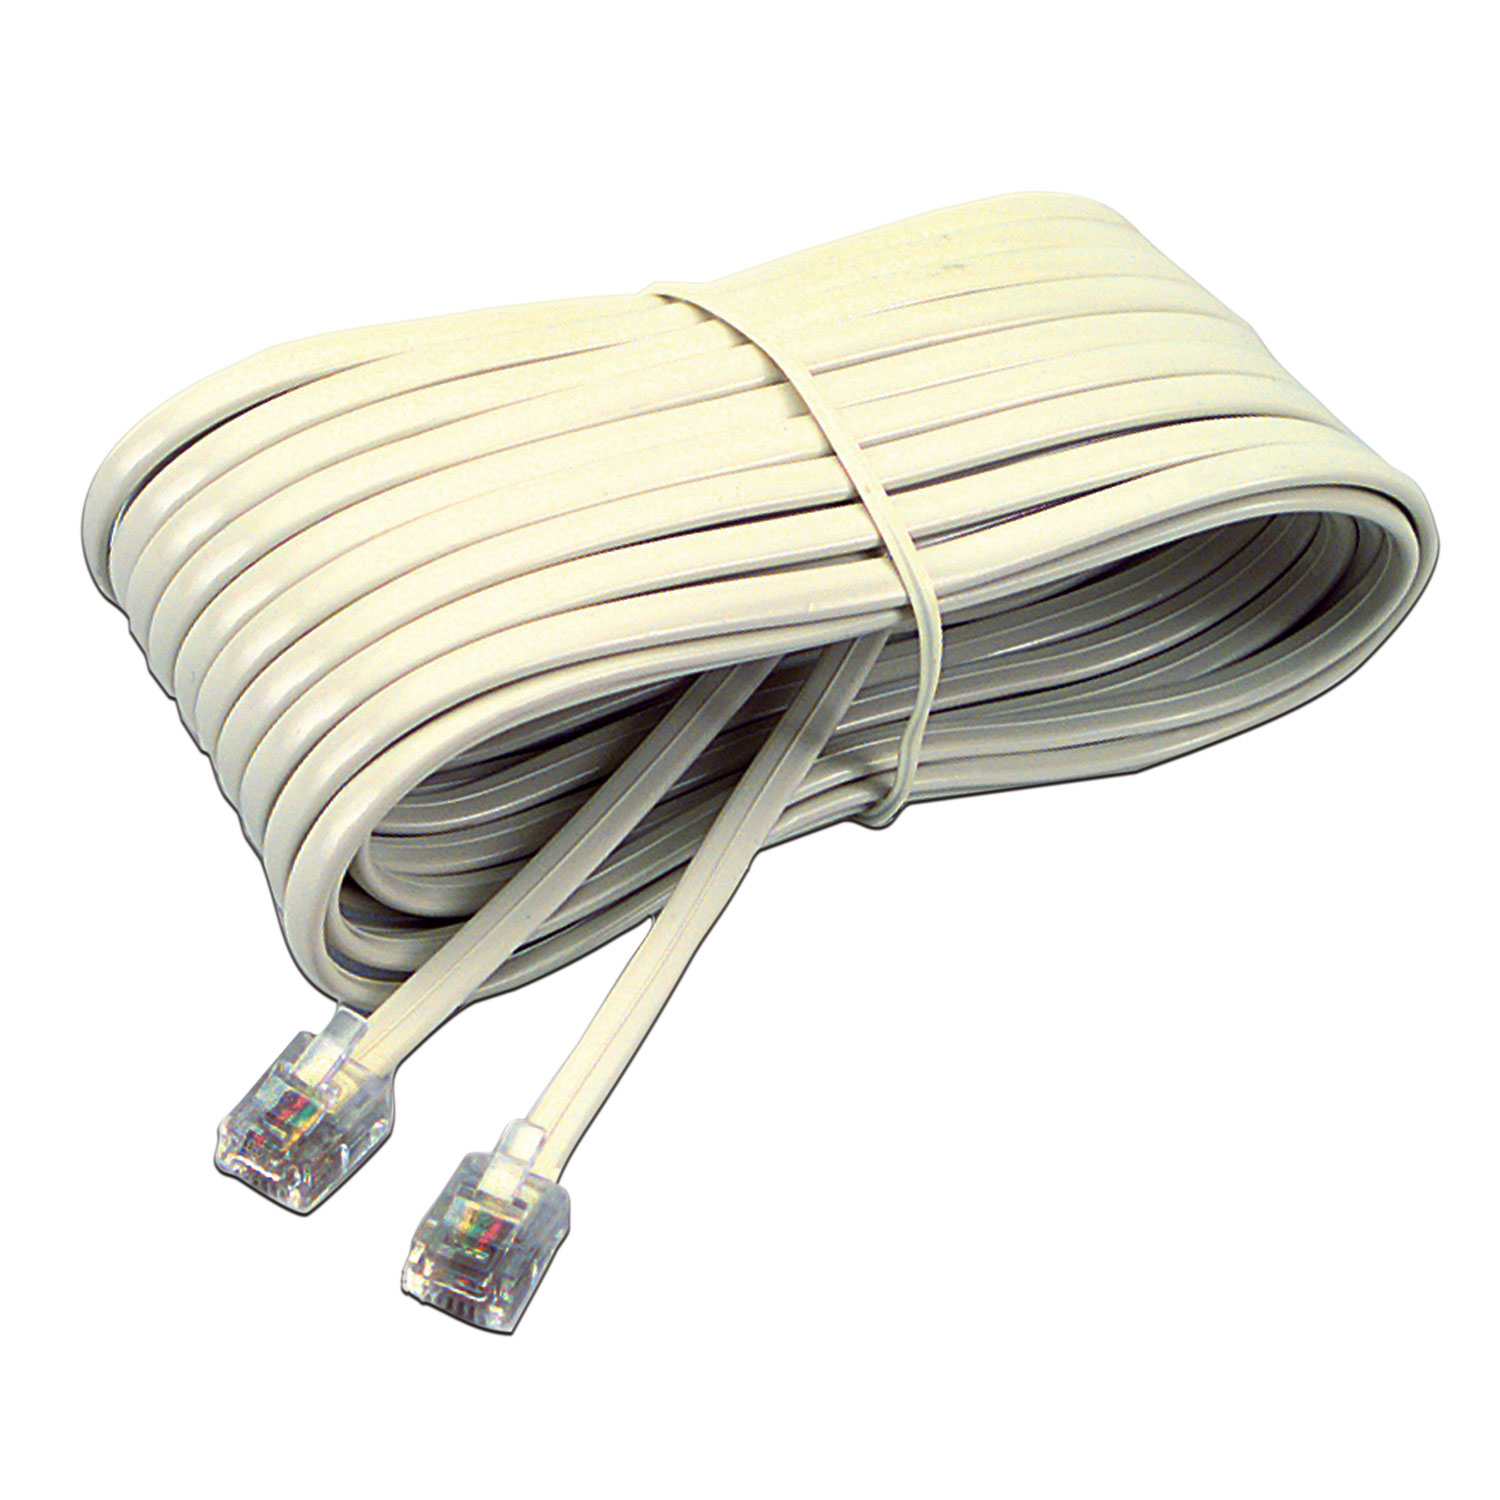  Softalk 04020 Telephone Extension Cord, Plug/Plug, 25 ft., Ivory (SOF04020) 